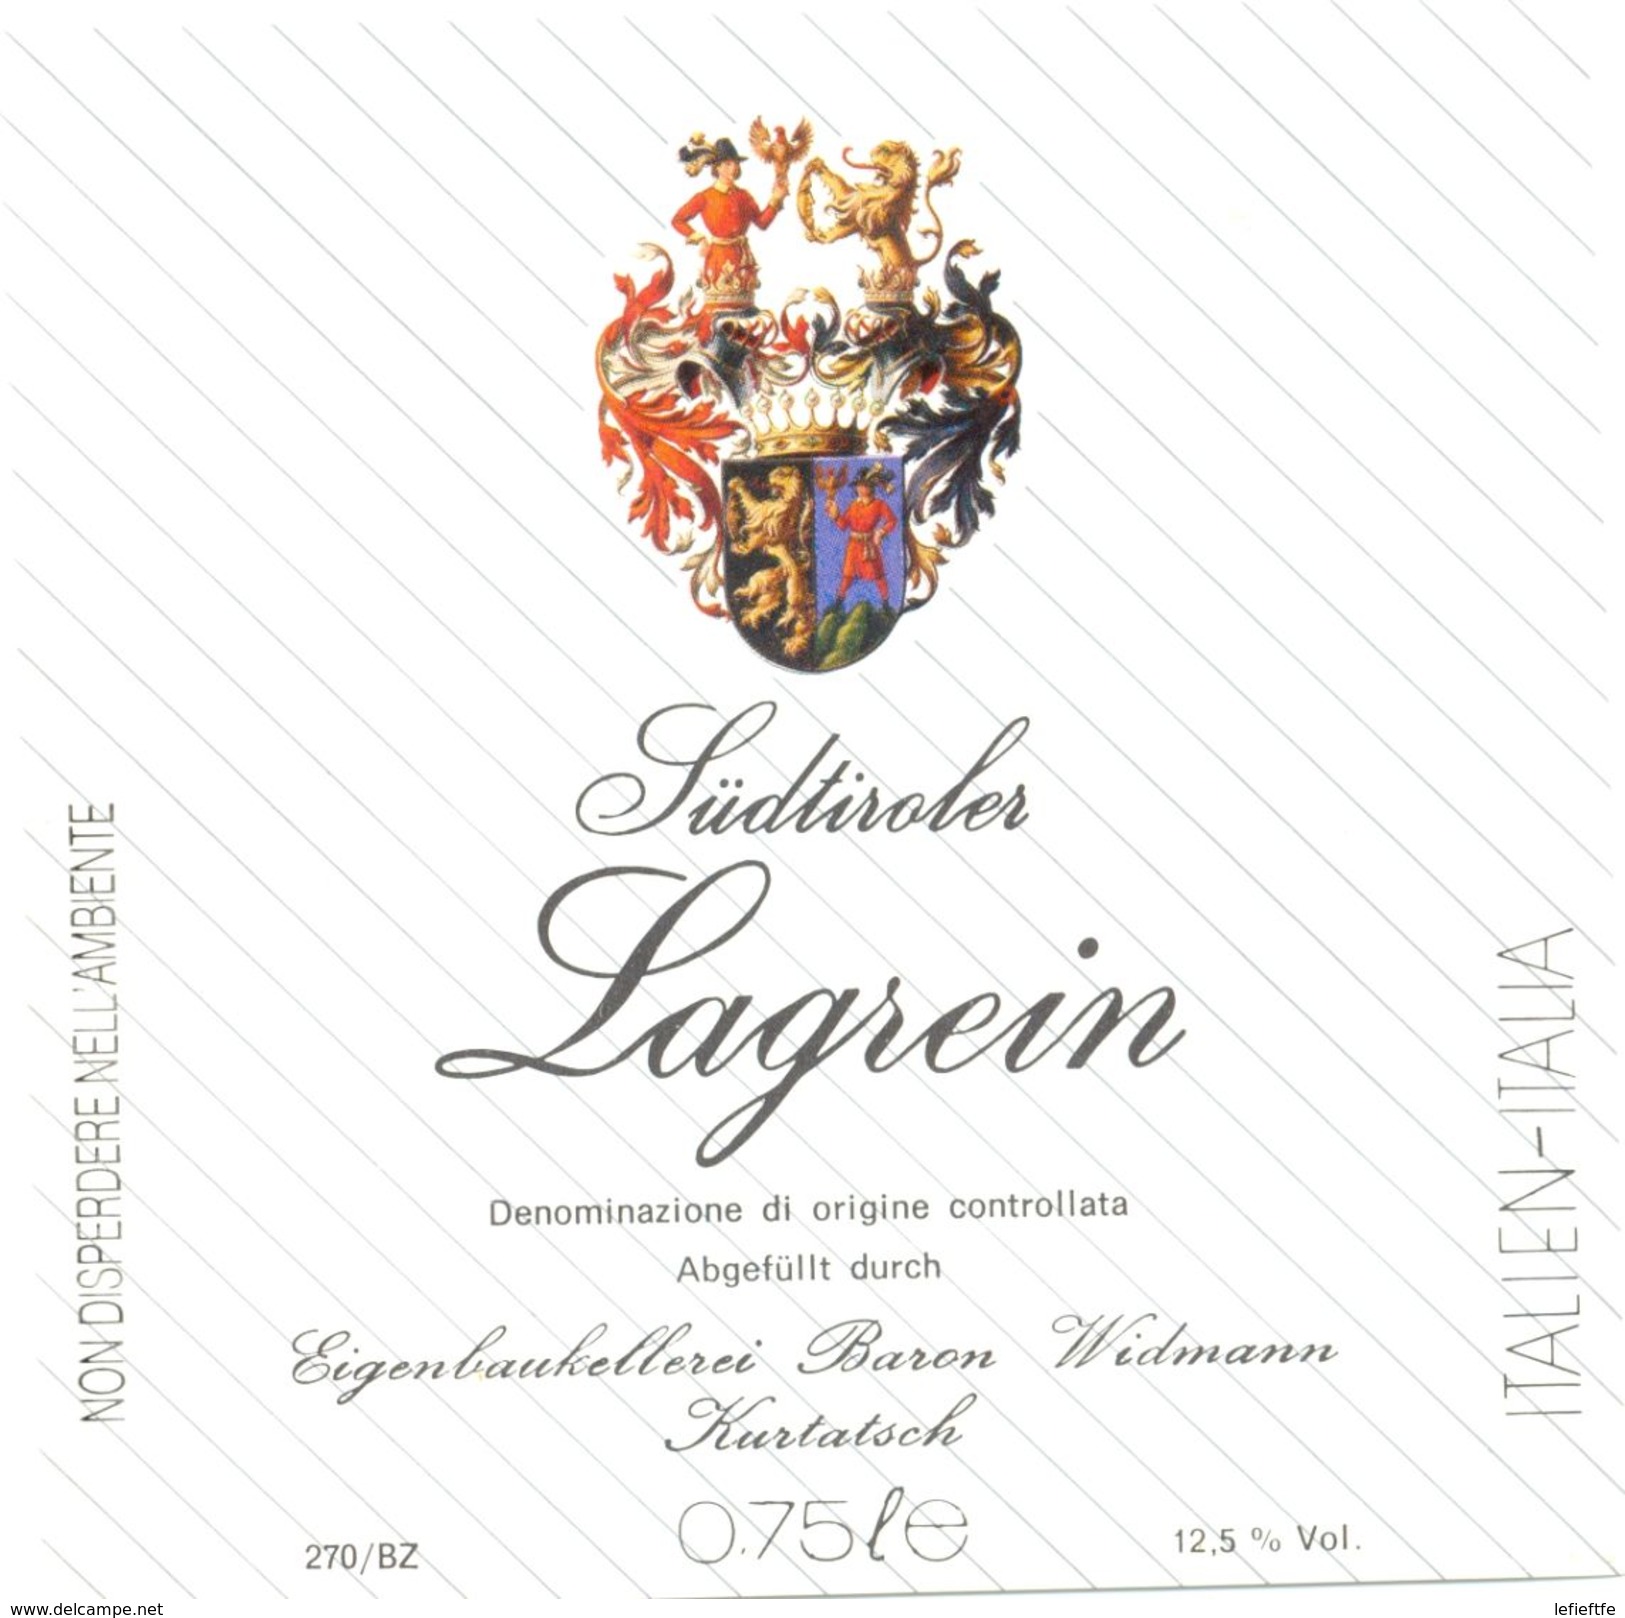 1426 - Italie - Sùdtiroler - Lagrein - Baron Widmann - Kurtatsch - Rode Wijn